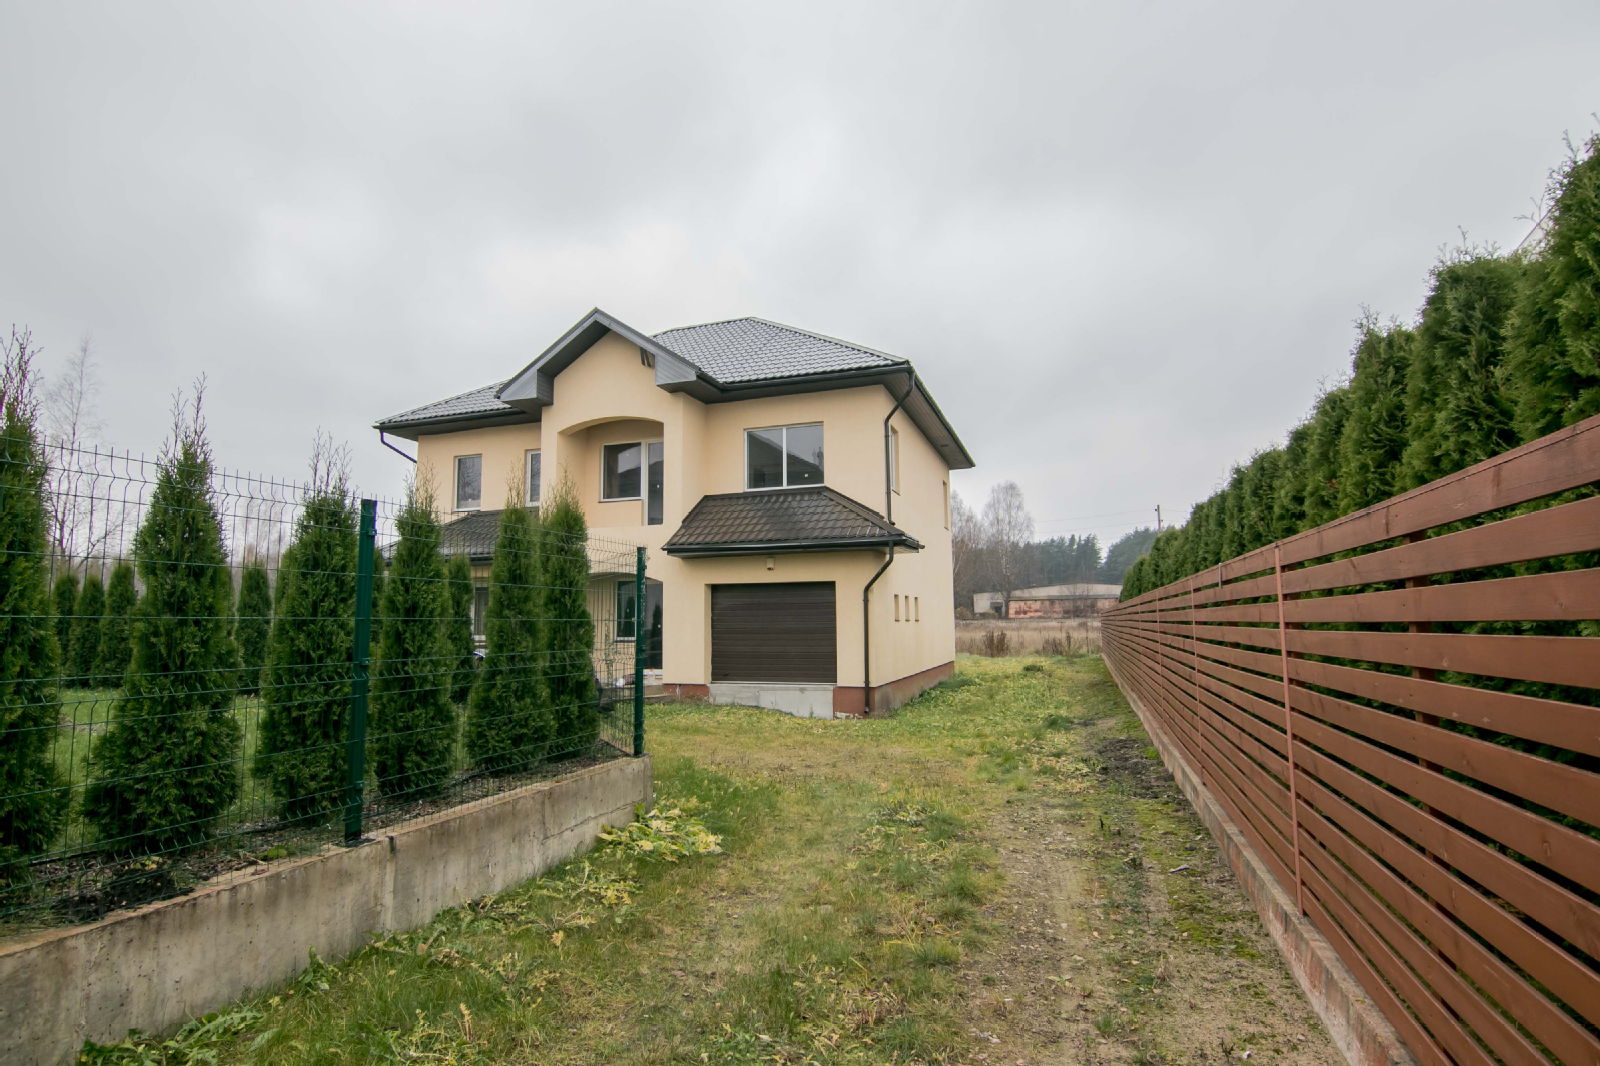 Jaunākie māju piedāvājumi ar cenas samazinājumu līdz pat 20 000 EUR! - Nekustamo īpašumu ziņas - City24.lv nekustamo īpašumu sludinājumu portāls